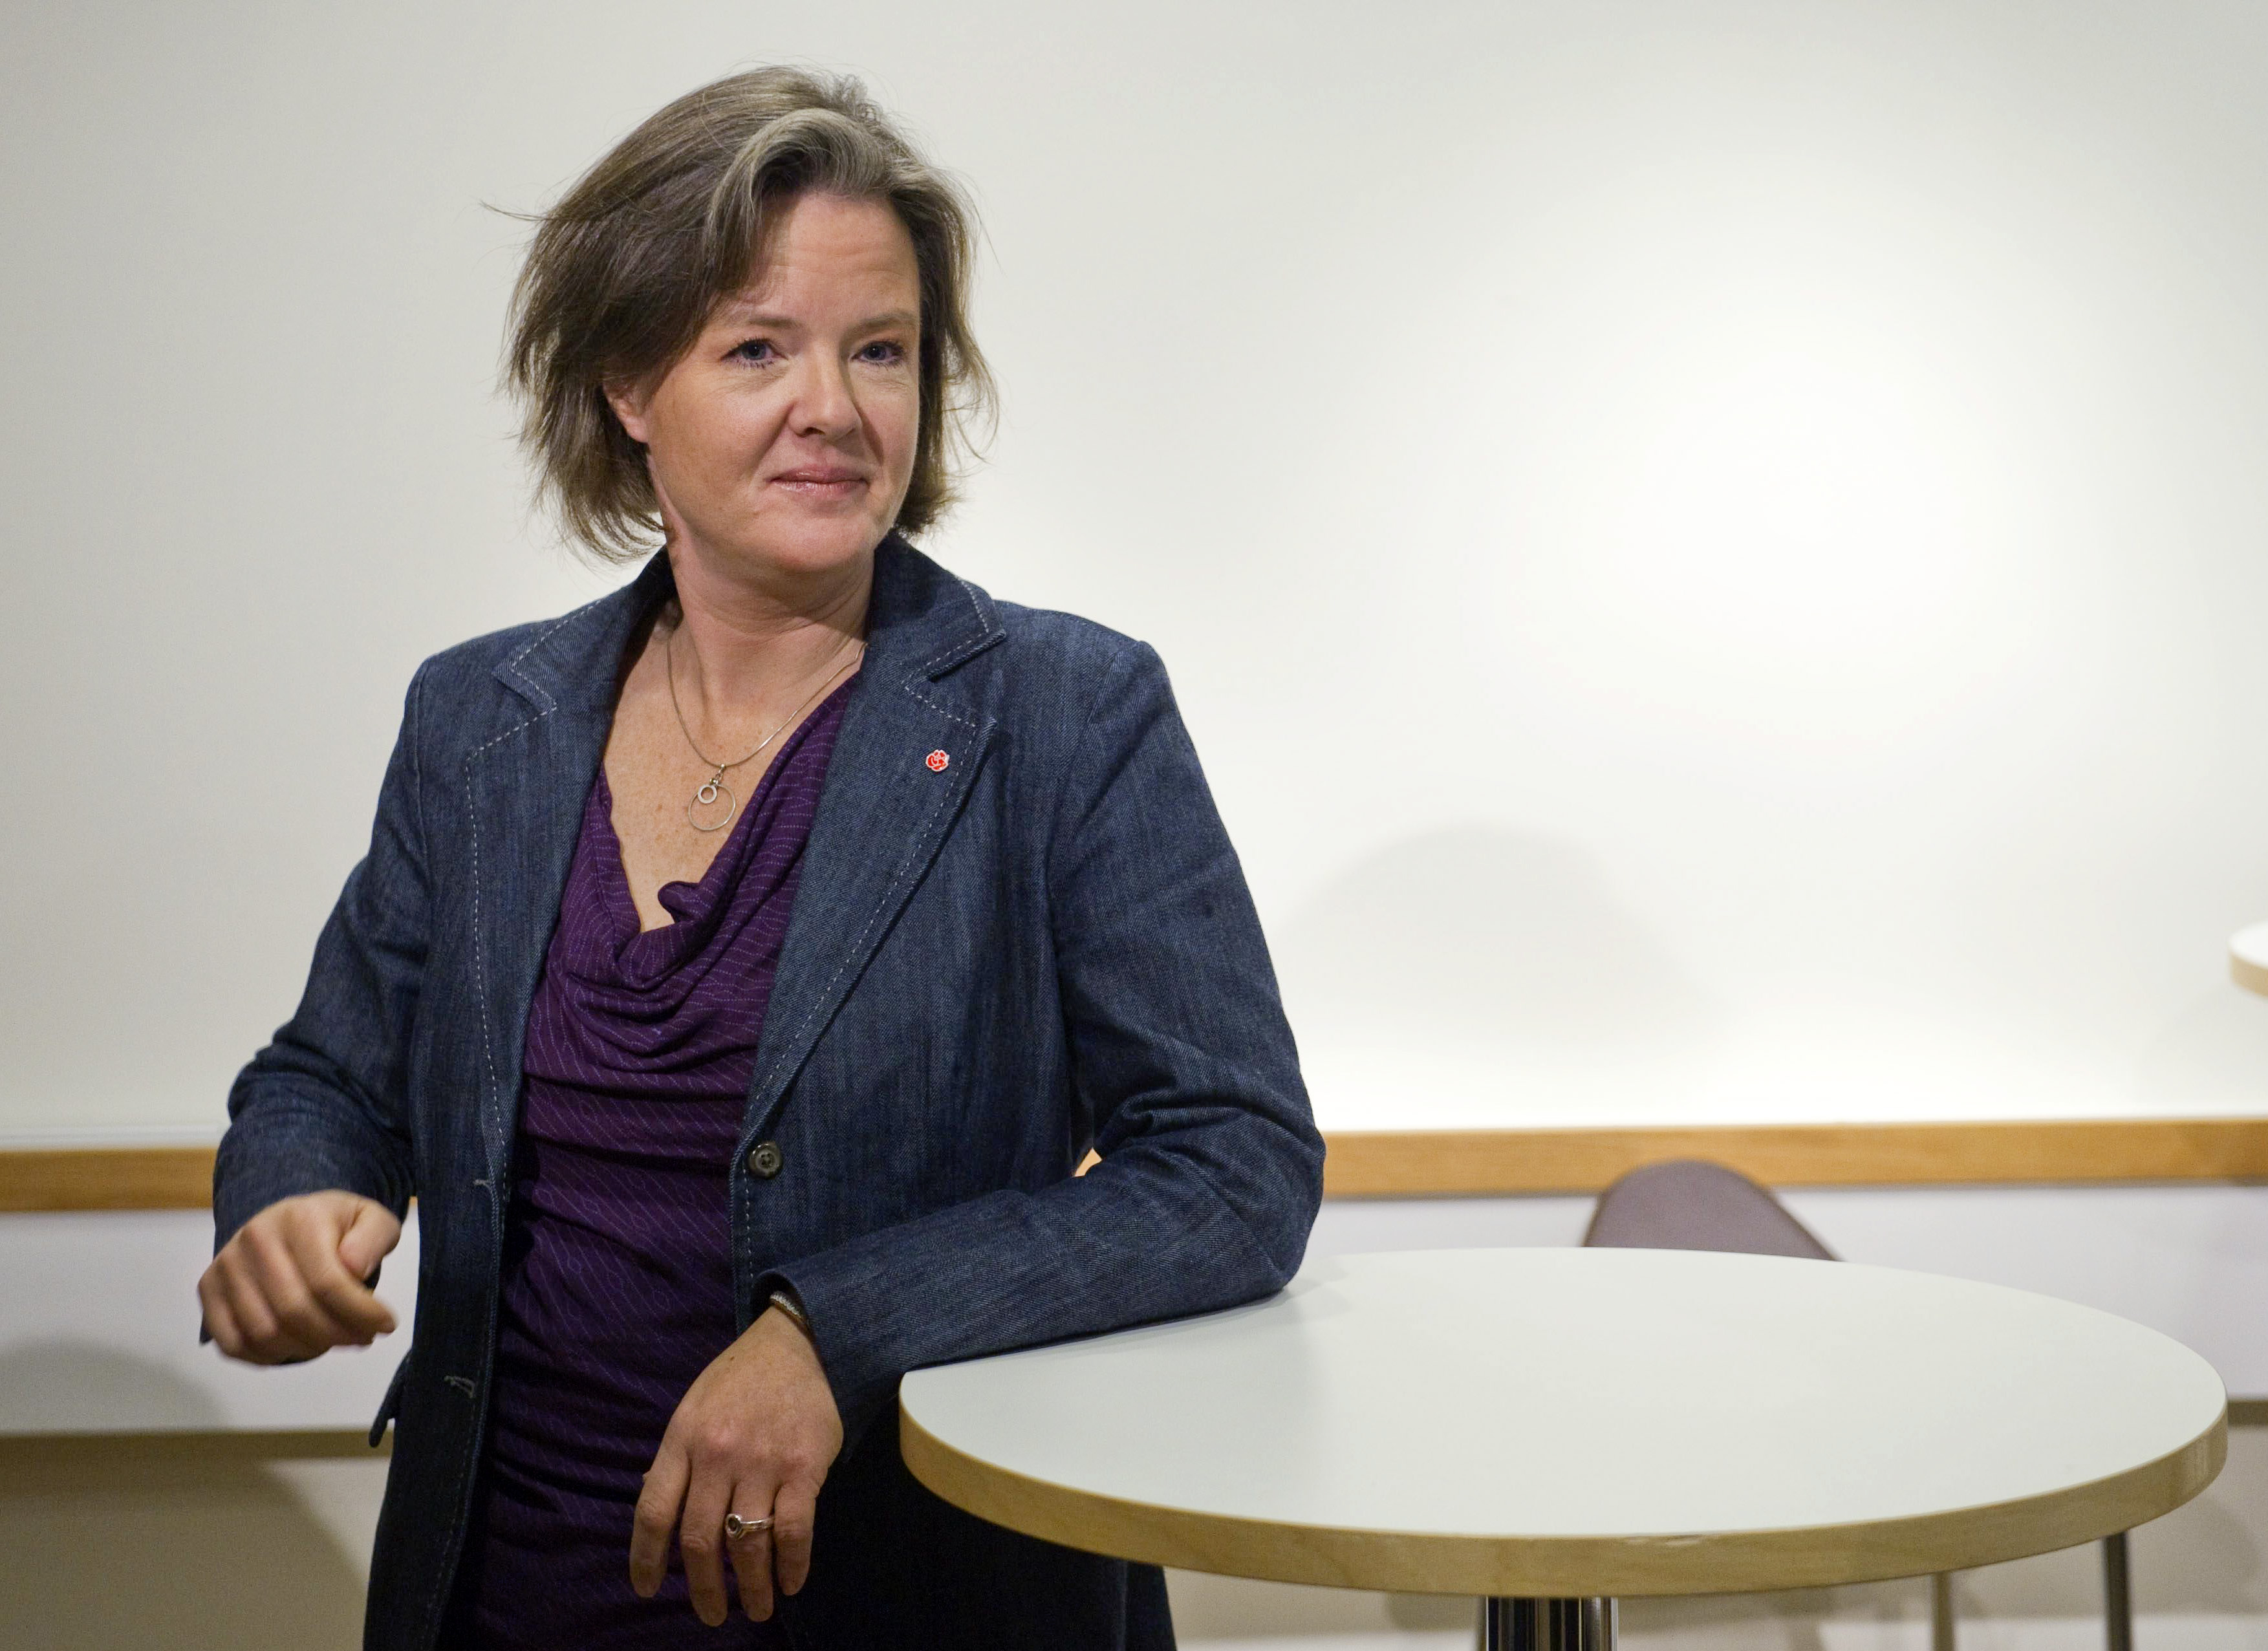 Socialdemokraterna, Håkan Juholt, Oppositionen, Partiledare, Politik